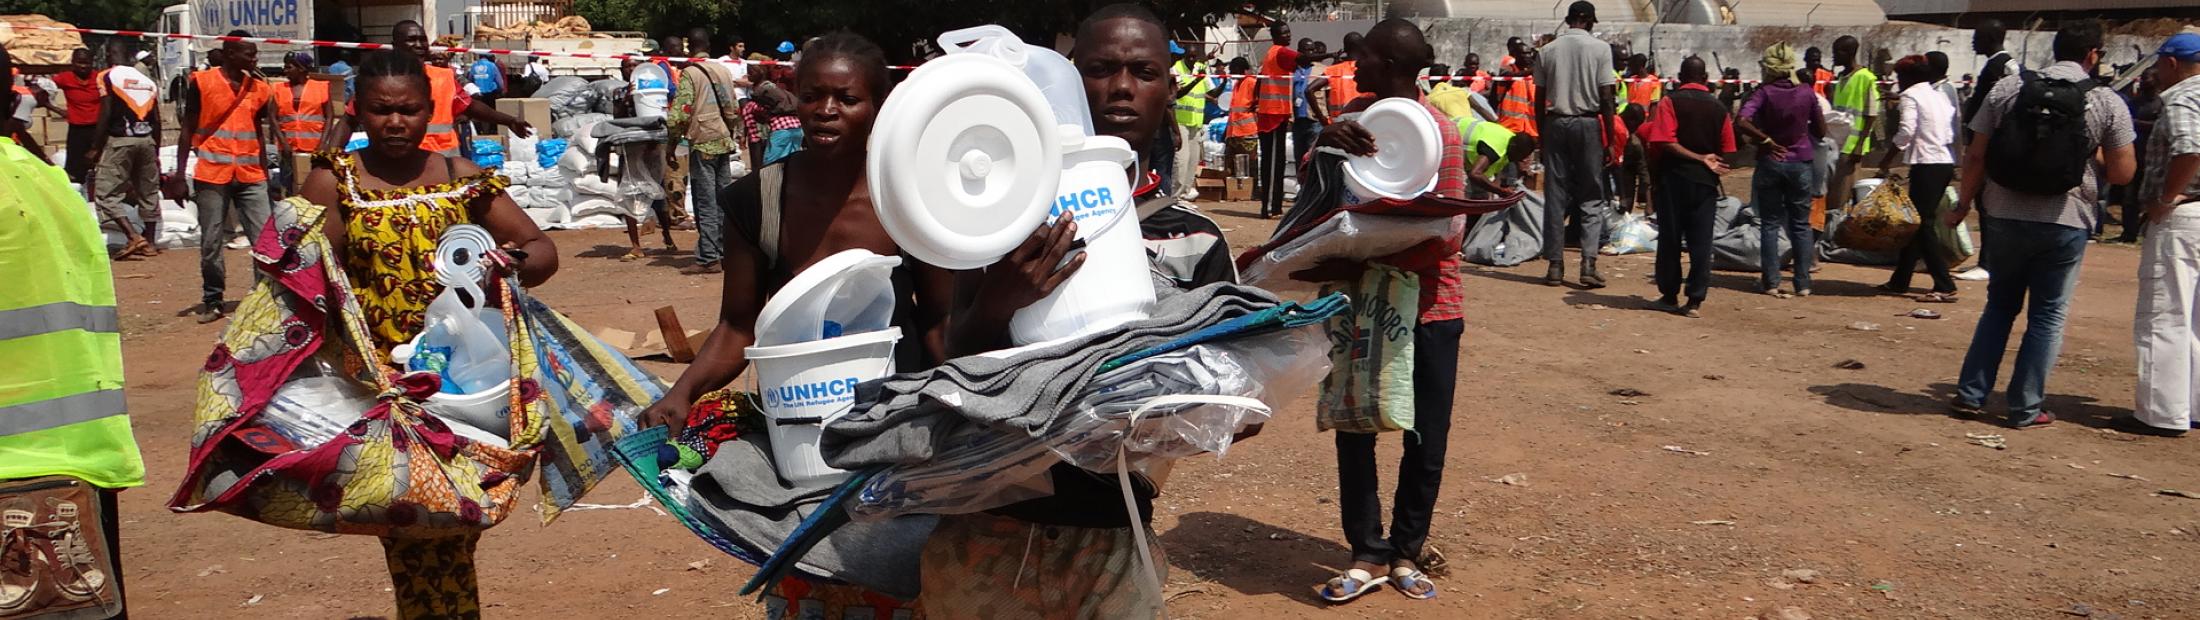 ACNUR reanuda la distribución de ayuda humanitaria en el aeropuerto de Bangui